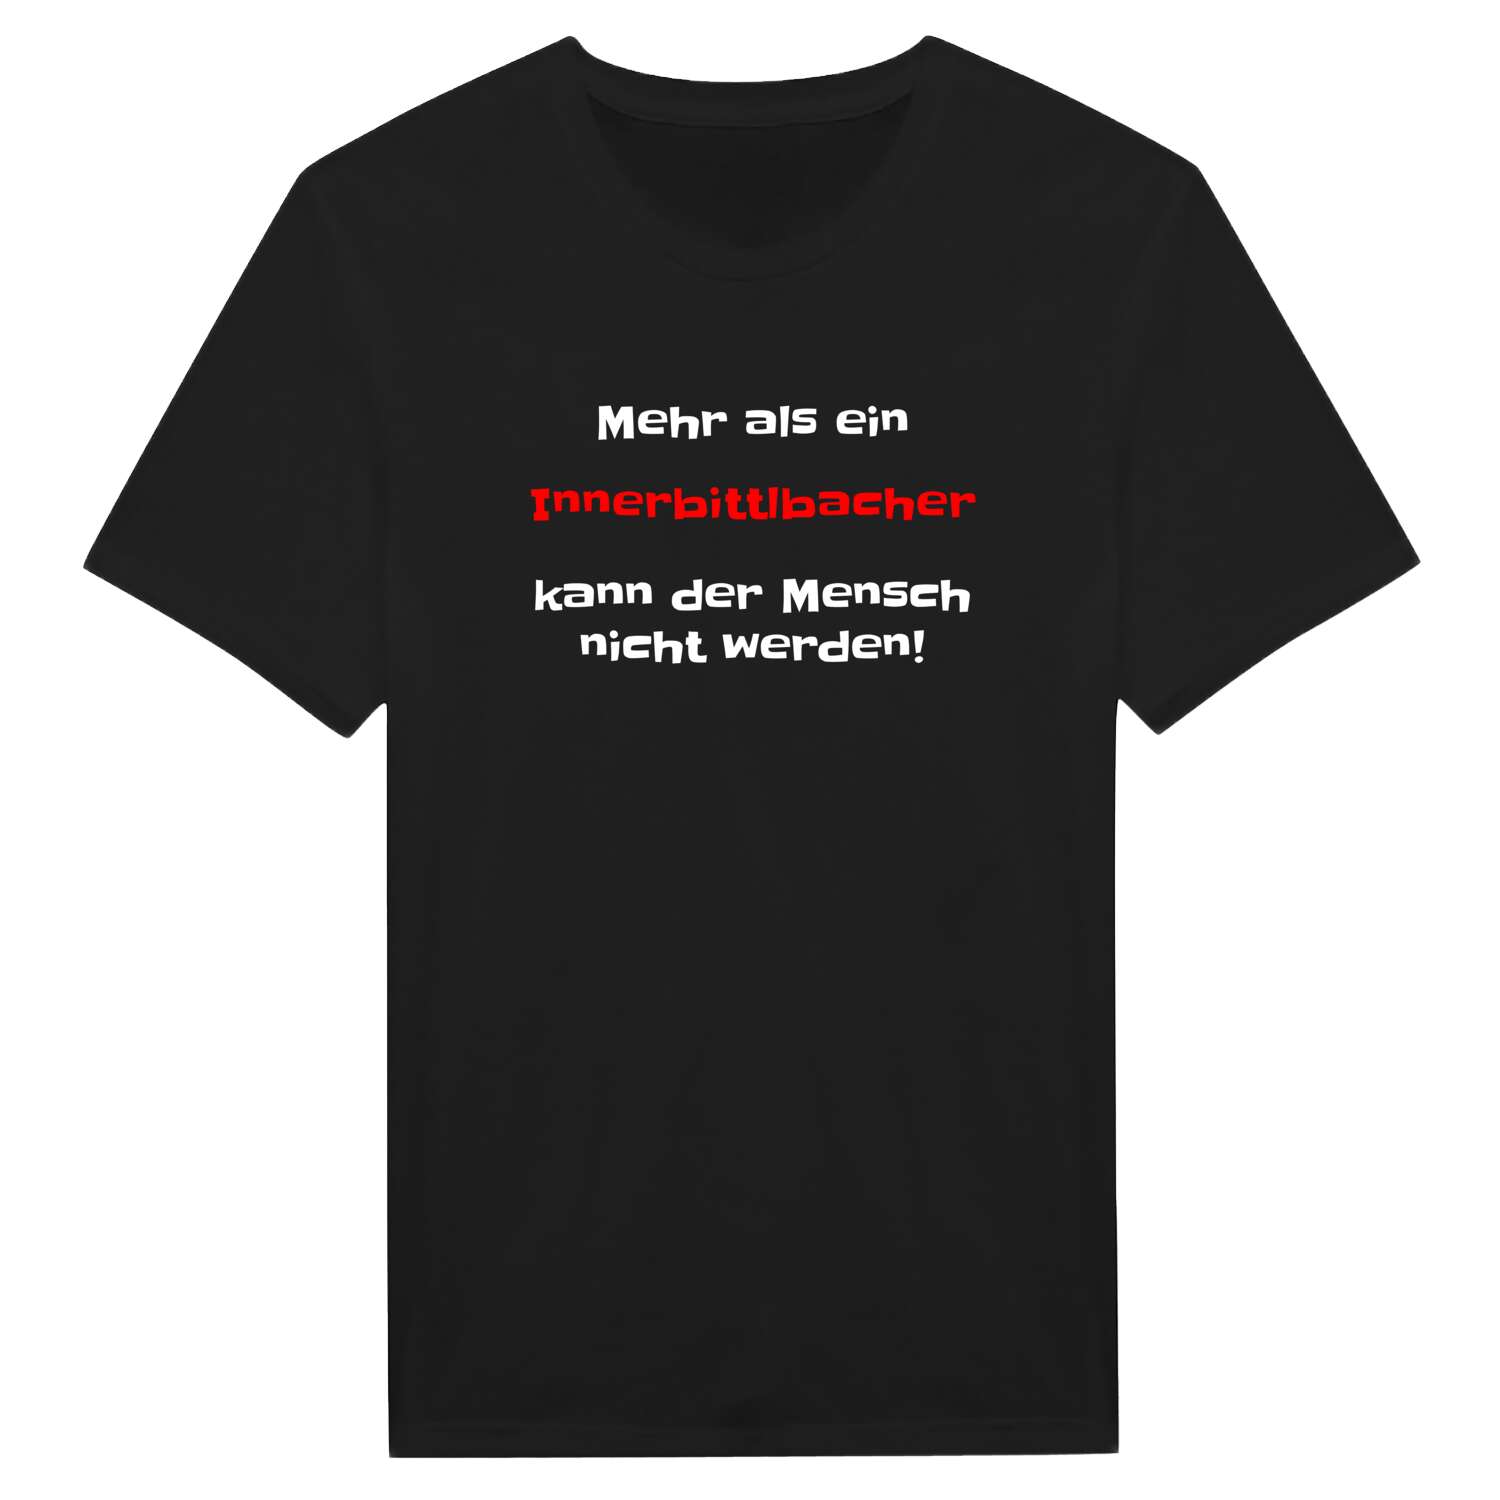 Innerbittlbach T-Shirt »Mehr als ein«